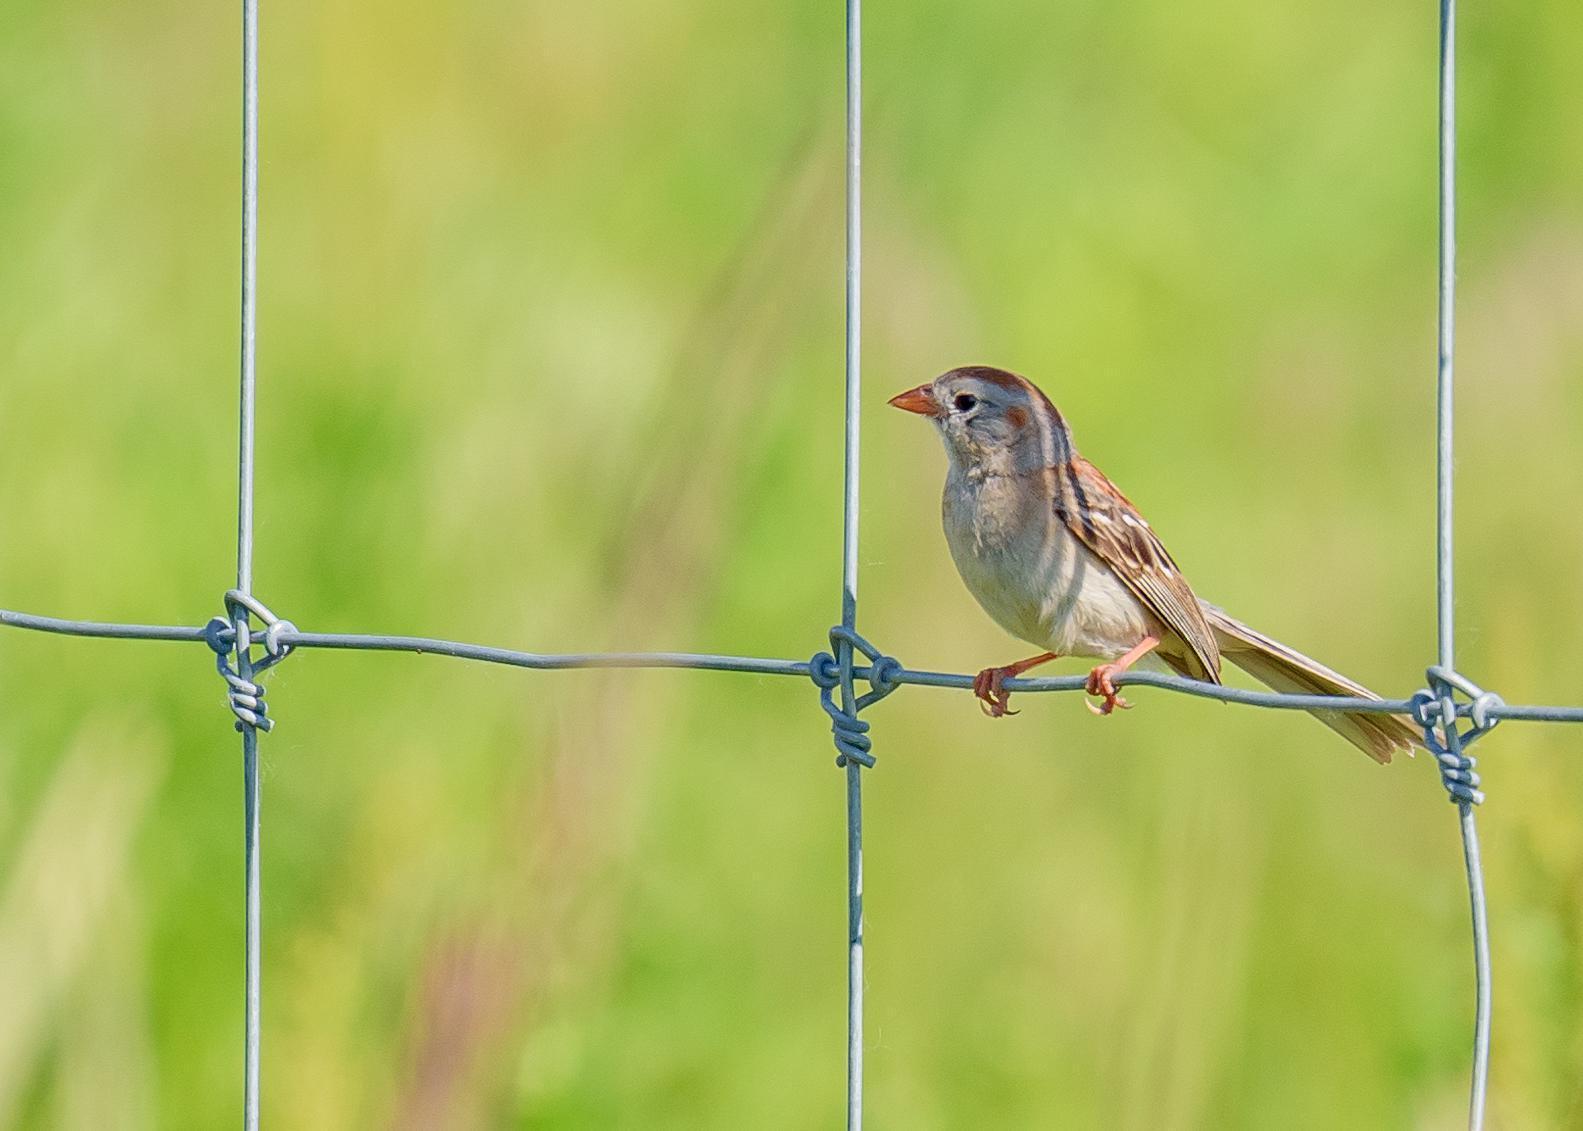 Field Sparrow Photo by Keshava Mysore